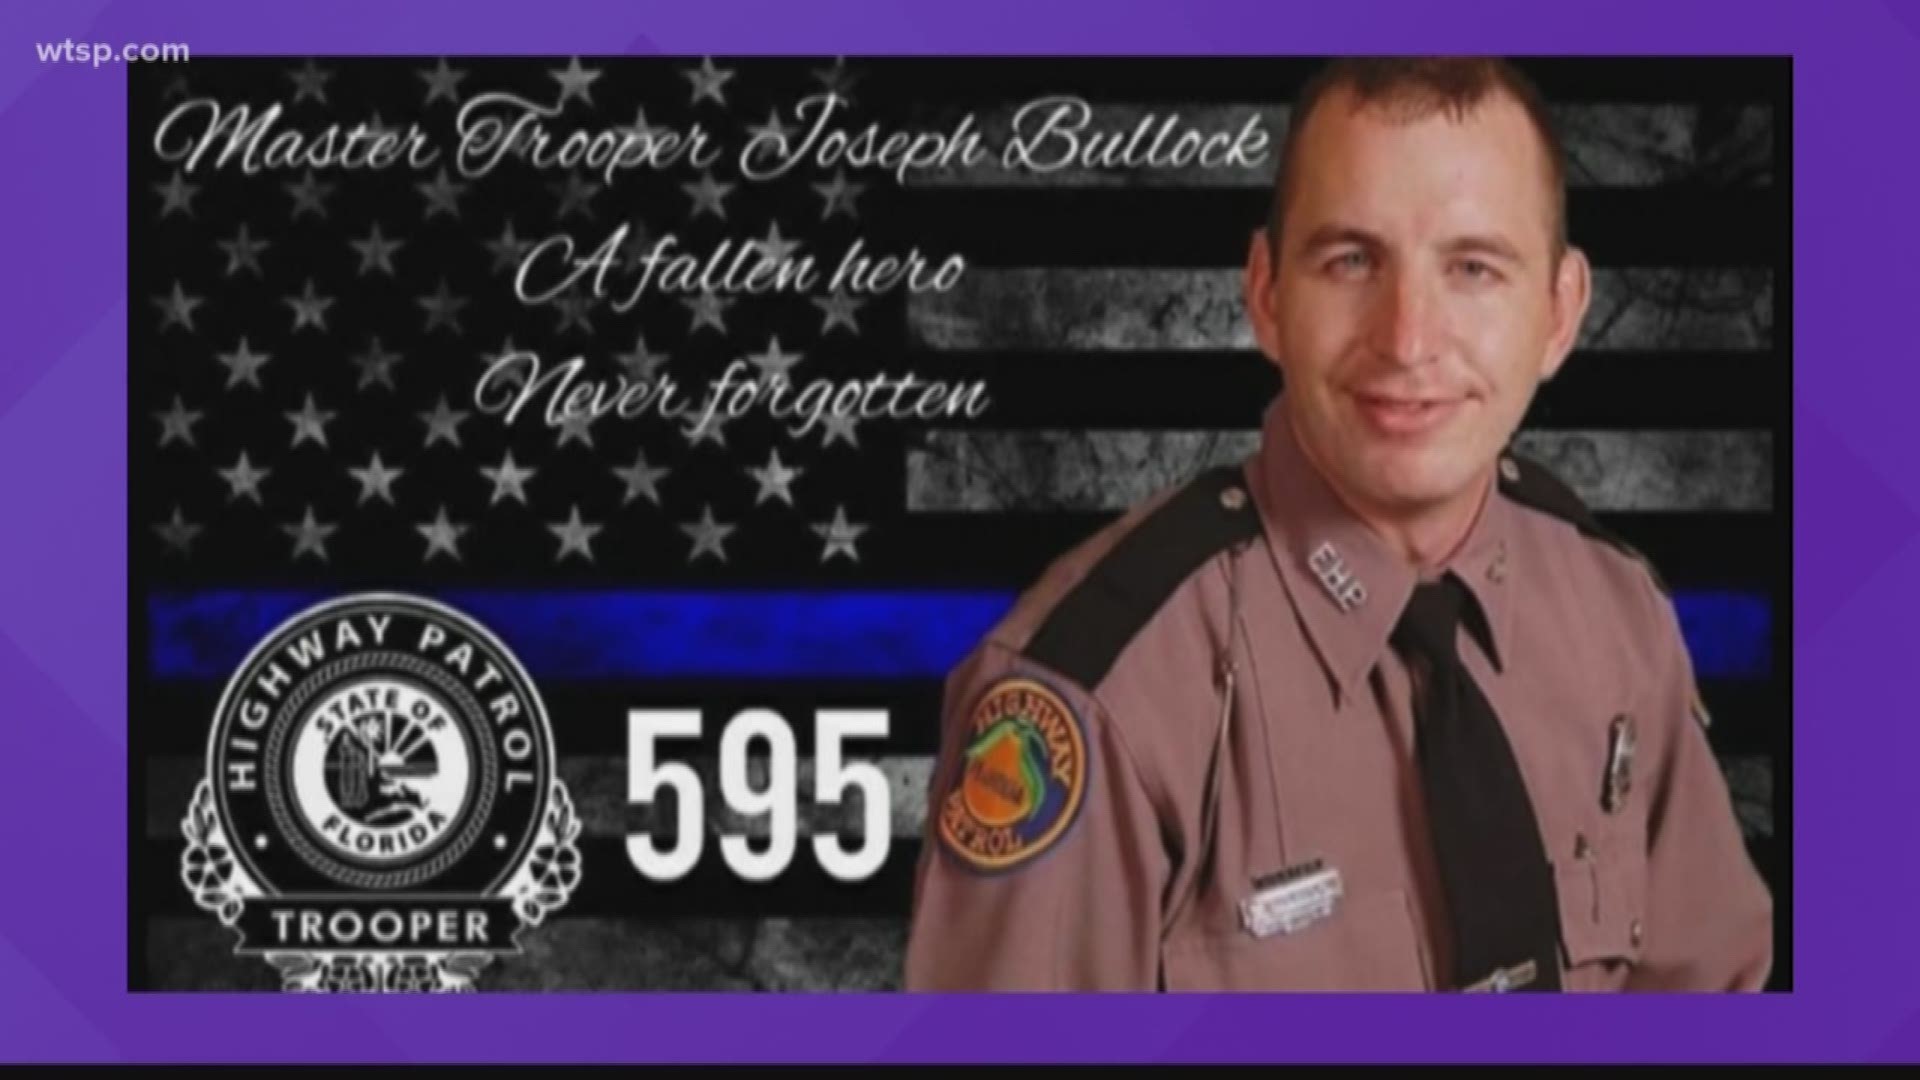 Trooper Joseph Bullock was killed last week in the line of duty.